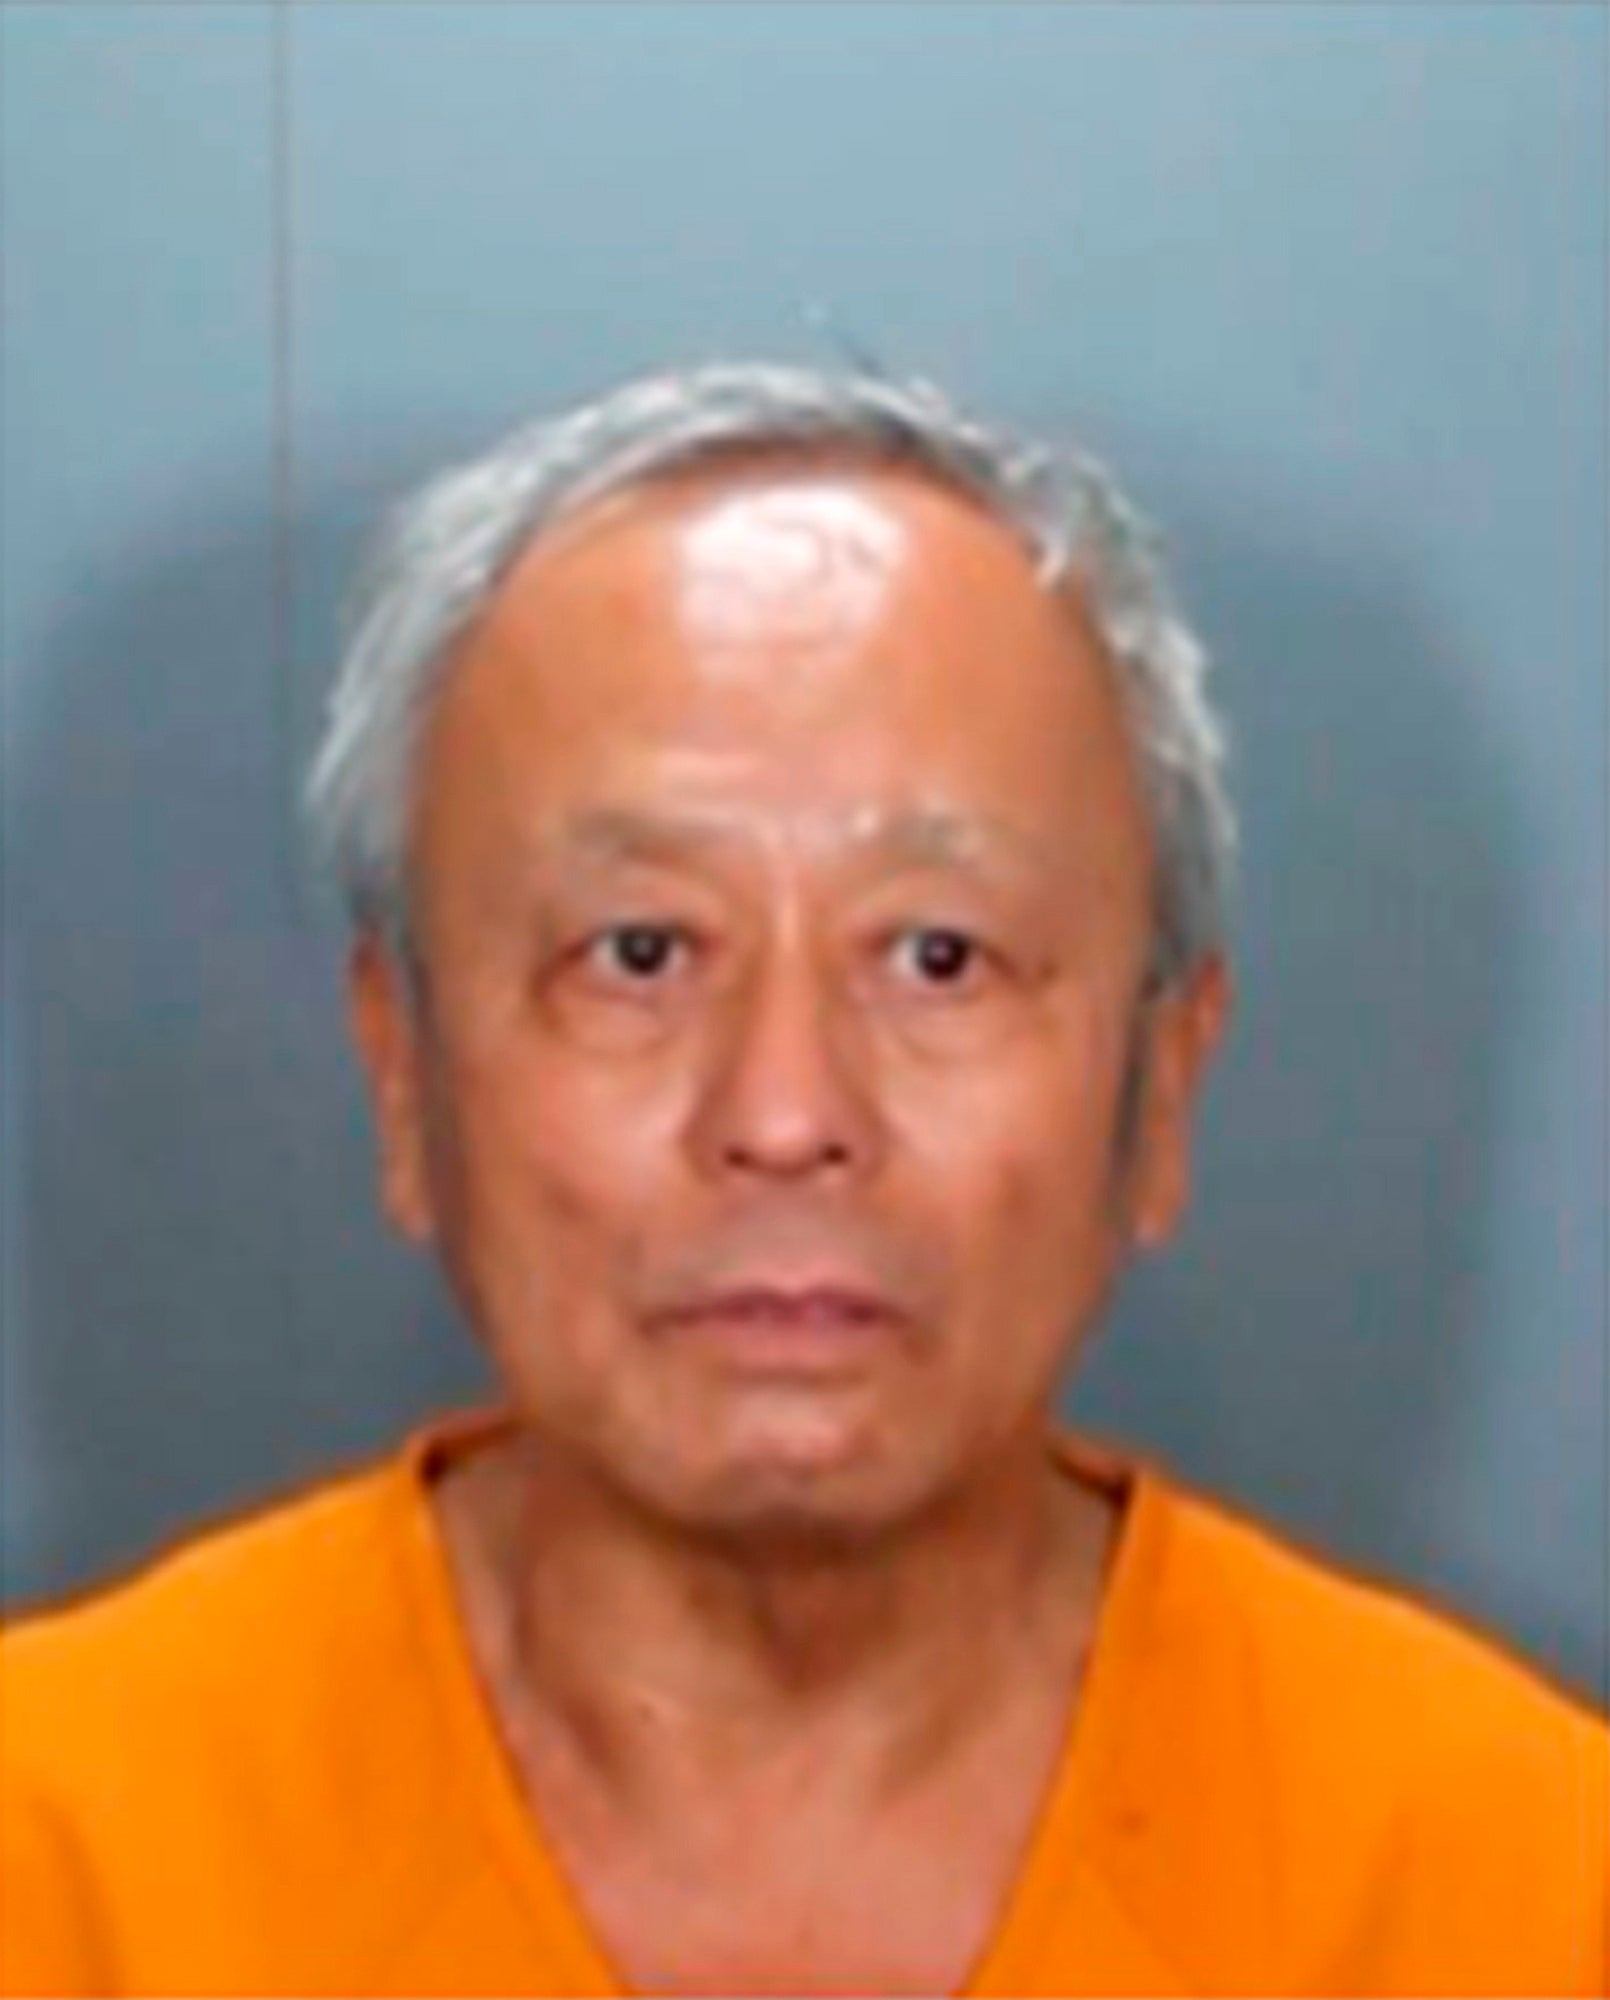 Las autoridades dijeron que David Chou, el acusado del ataque mortal del domingo en una iglesia del sur de California, era un inmigrante chino motivado por el odio a los taiwaneses